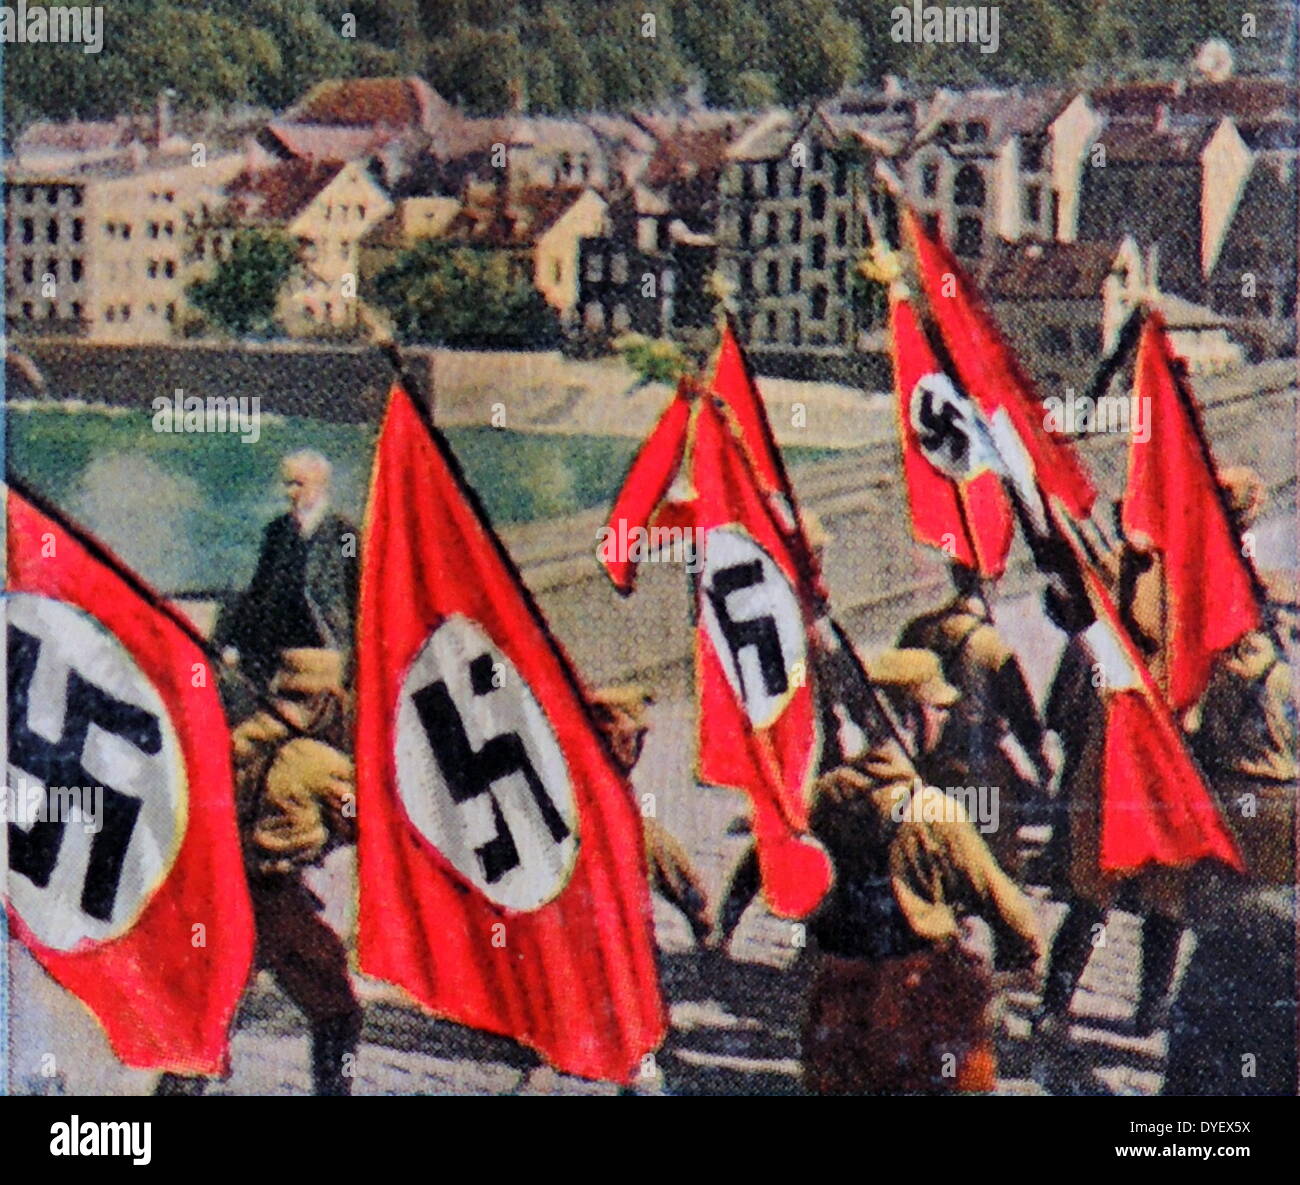 Nazi swastika flags are paraded into Heidelberg, Germany 1933 Stock Photo